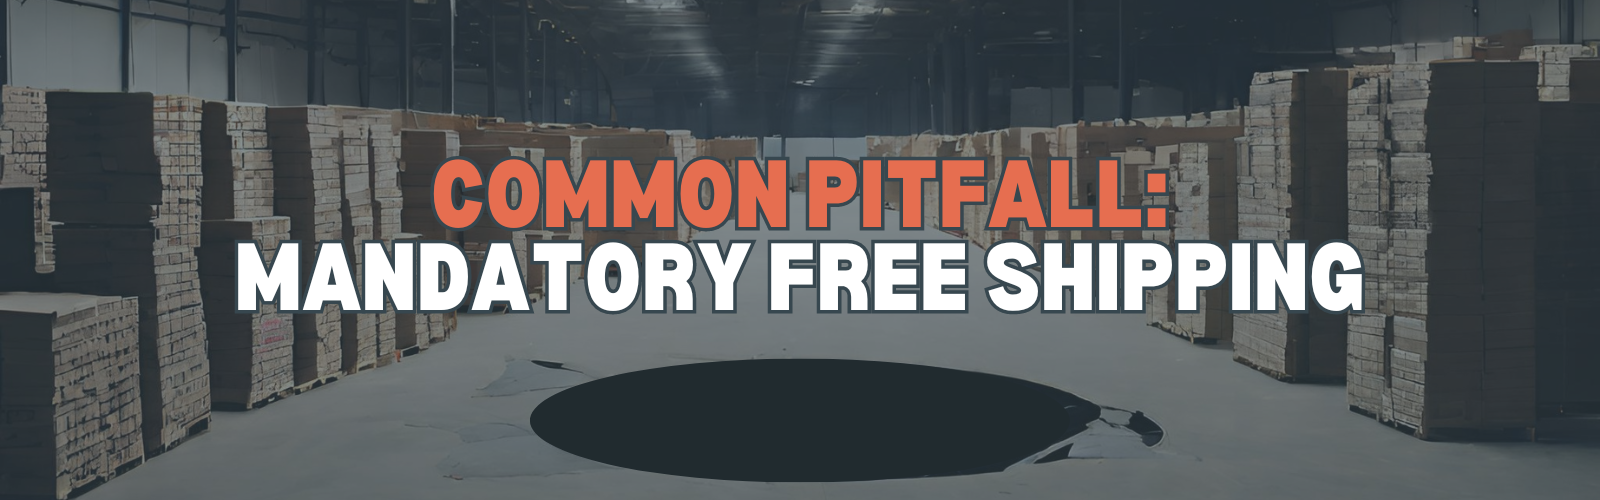 Amazon FBA - Common Pitfall - Mandatory Free Shipping